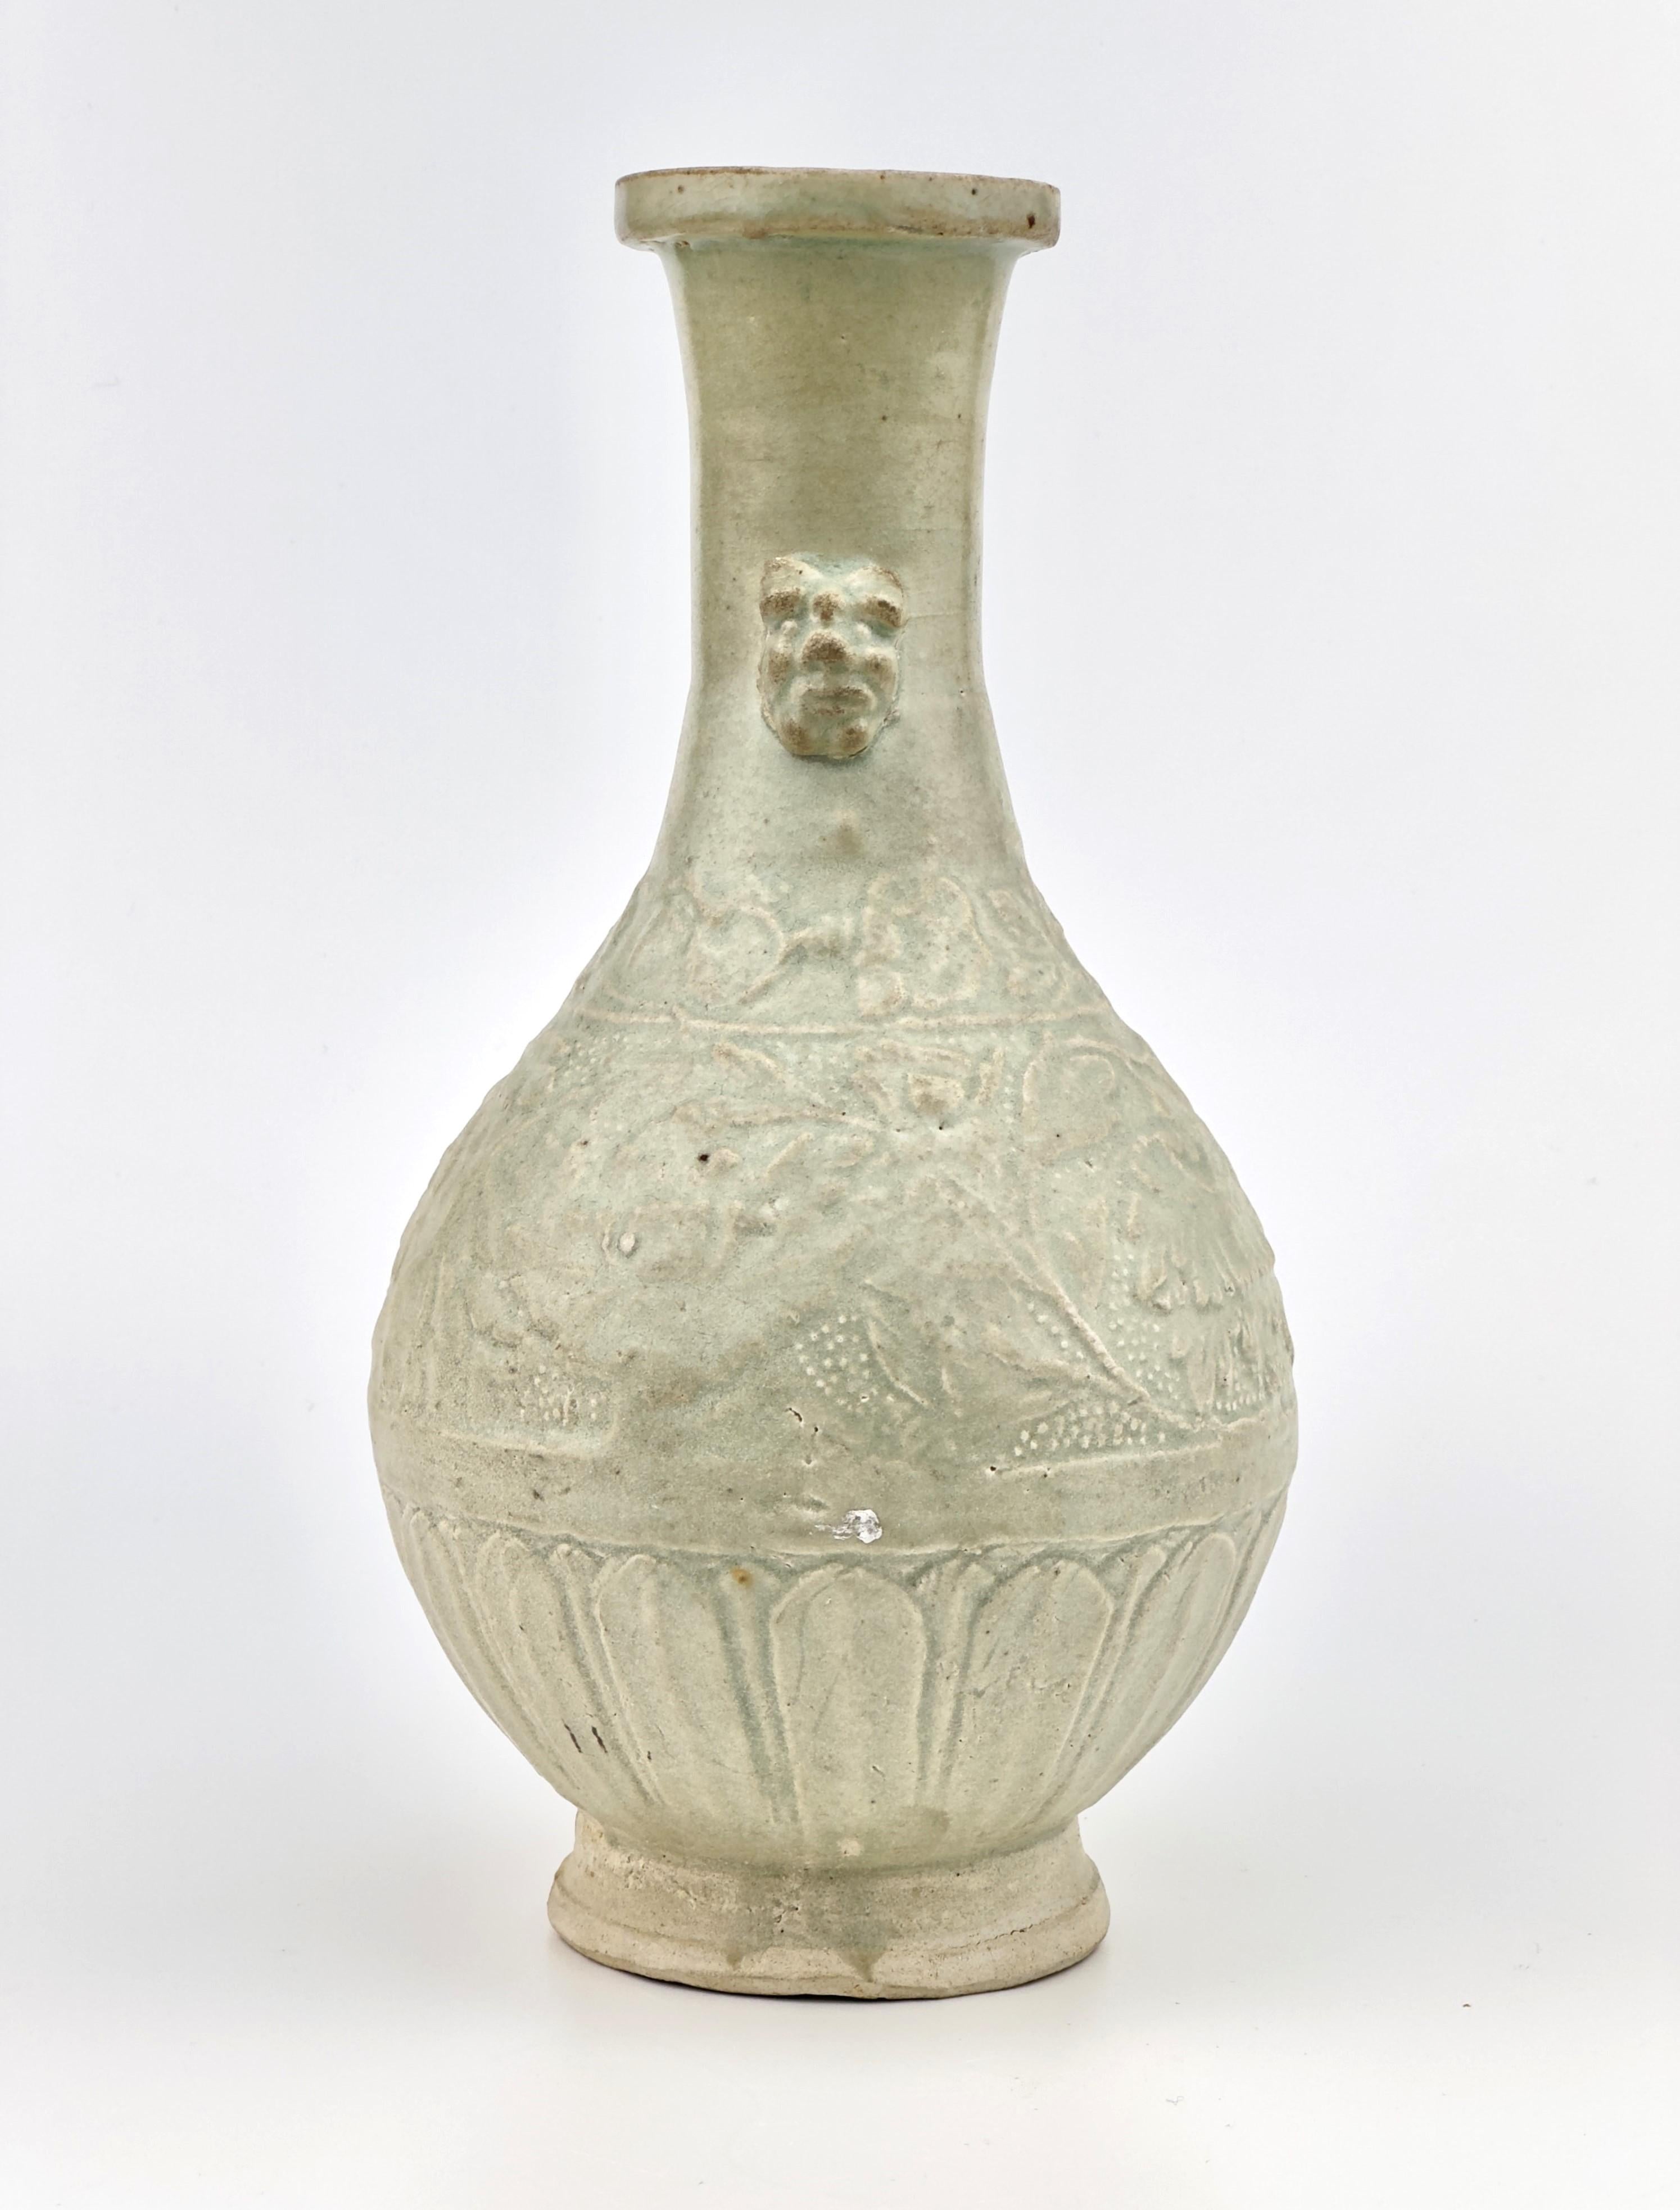 Le vase repose sur un pied légèrement évasé et est flanqué d'une paire d'anses en forme de masque sur le haut col cylindrique. Le corps est moulé avec un motif de volutes de lotus entre une bande de volutes florales et une bande de pétales.

Période